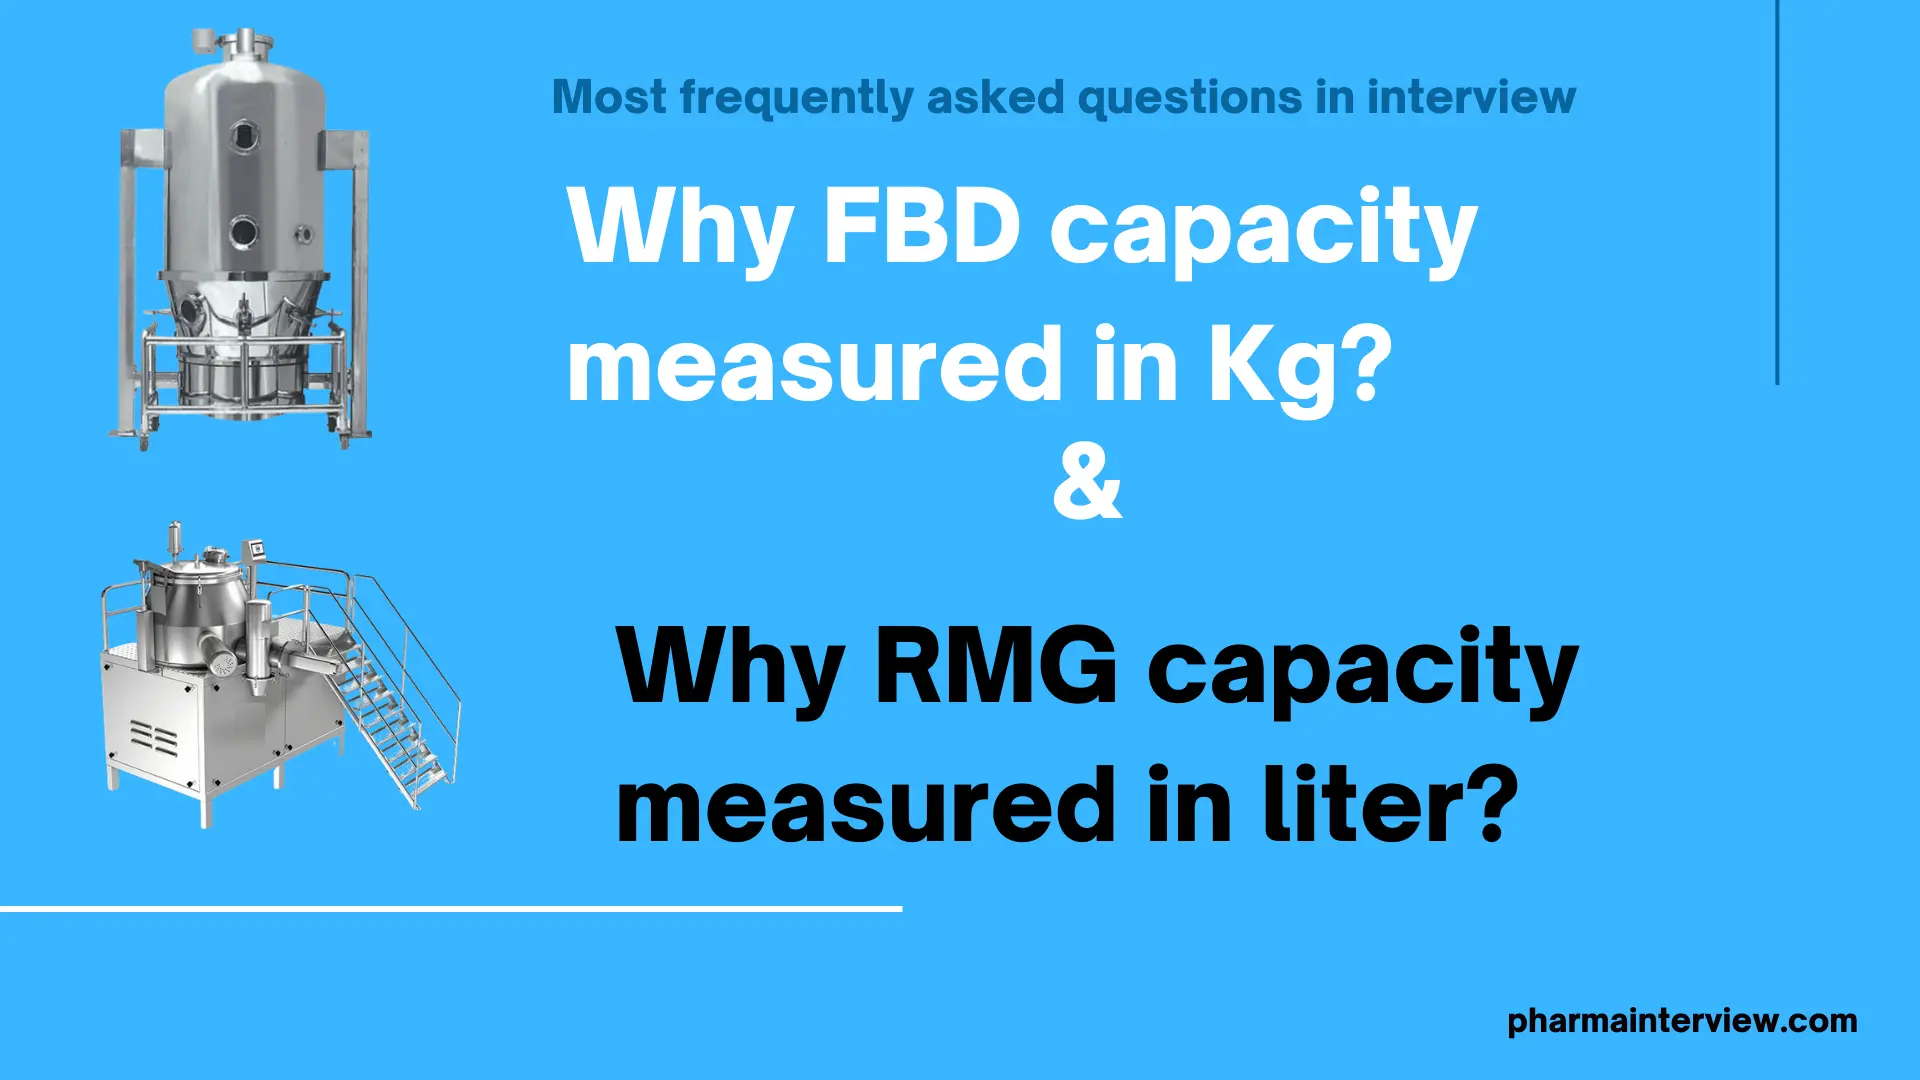 Why FBD capacity measured in Kg and RMG capacity measured in liter